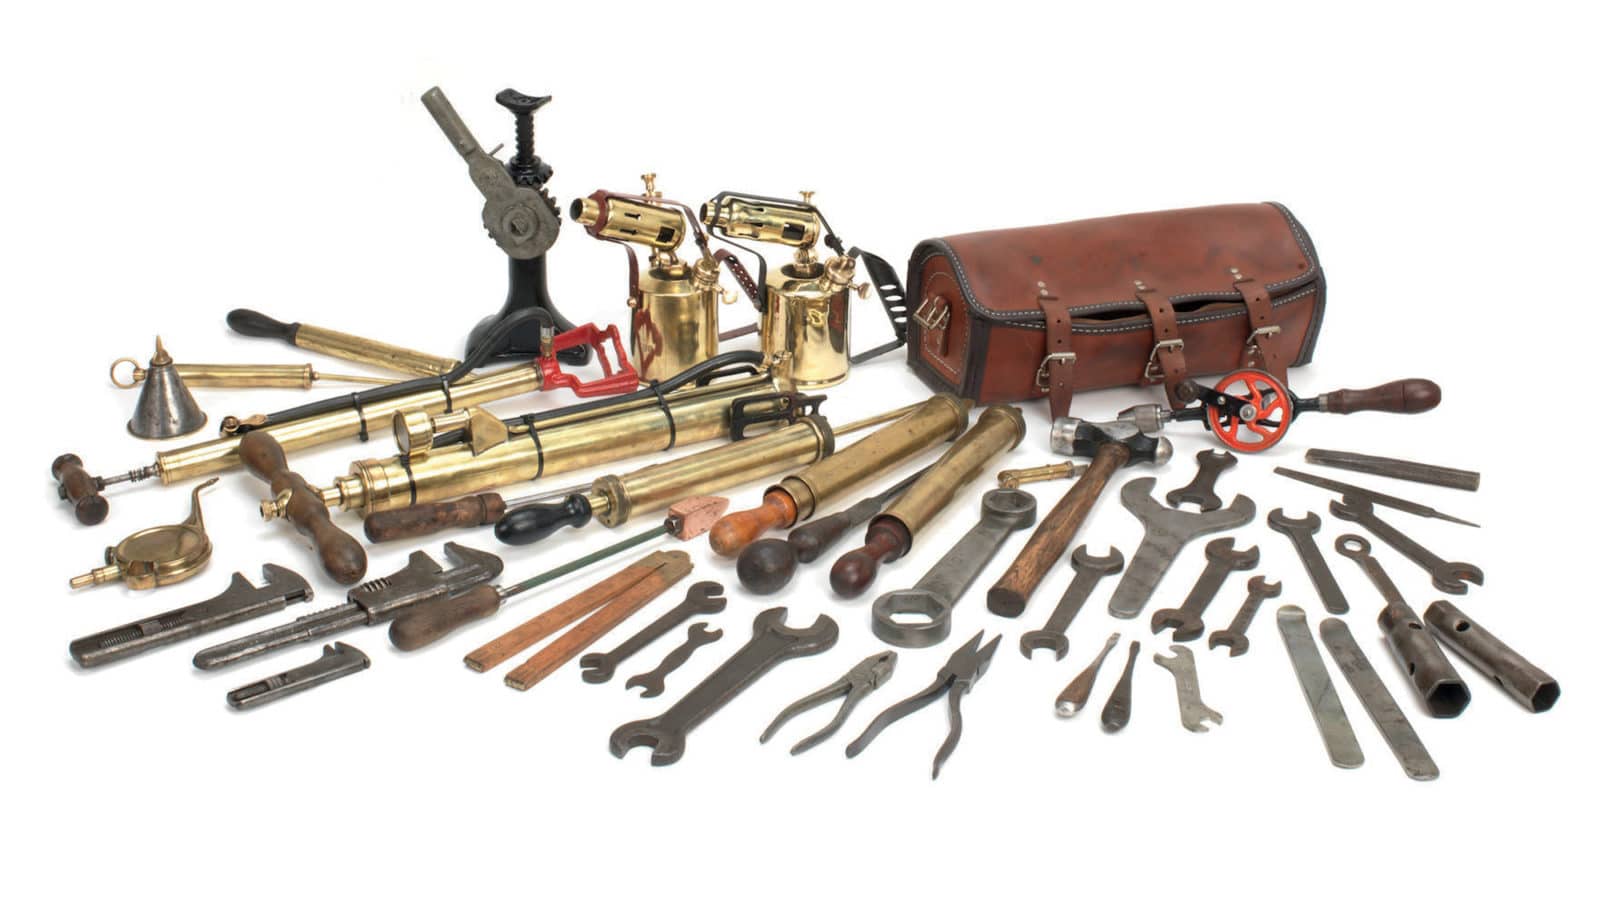 Vintage tools auction lot